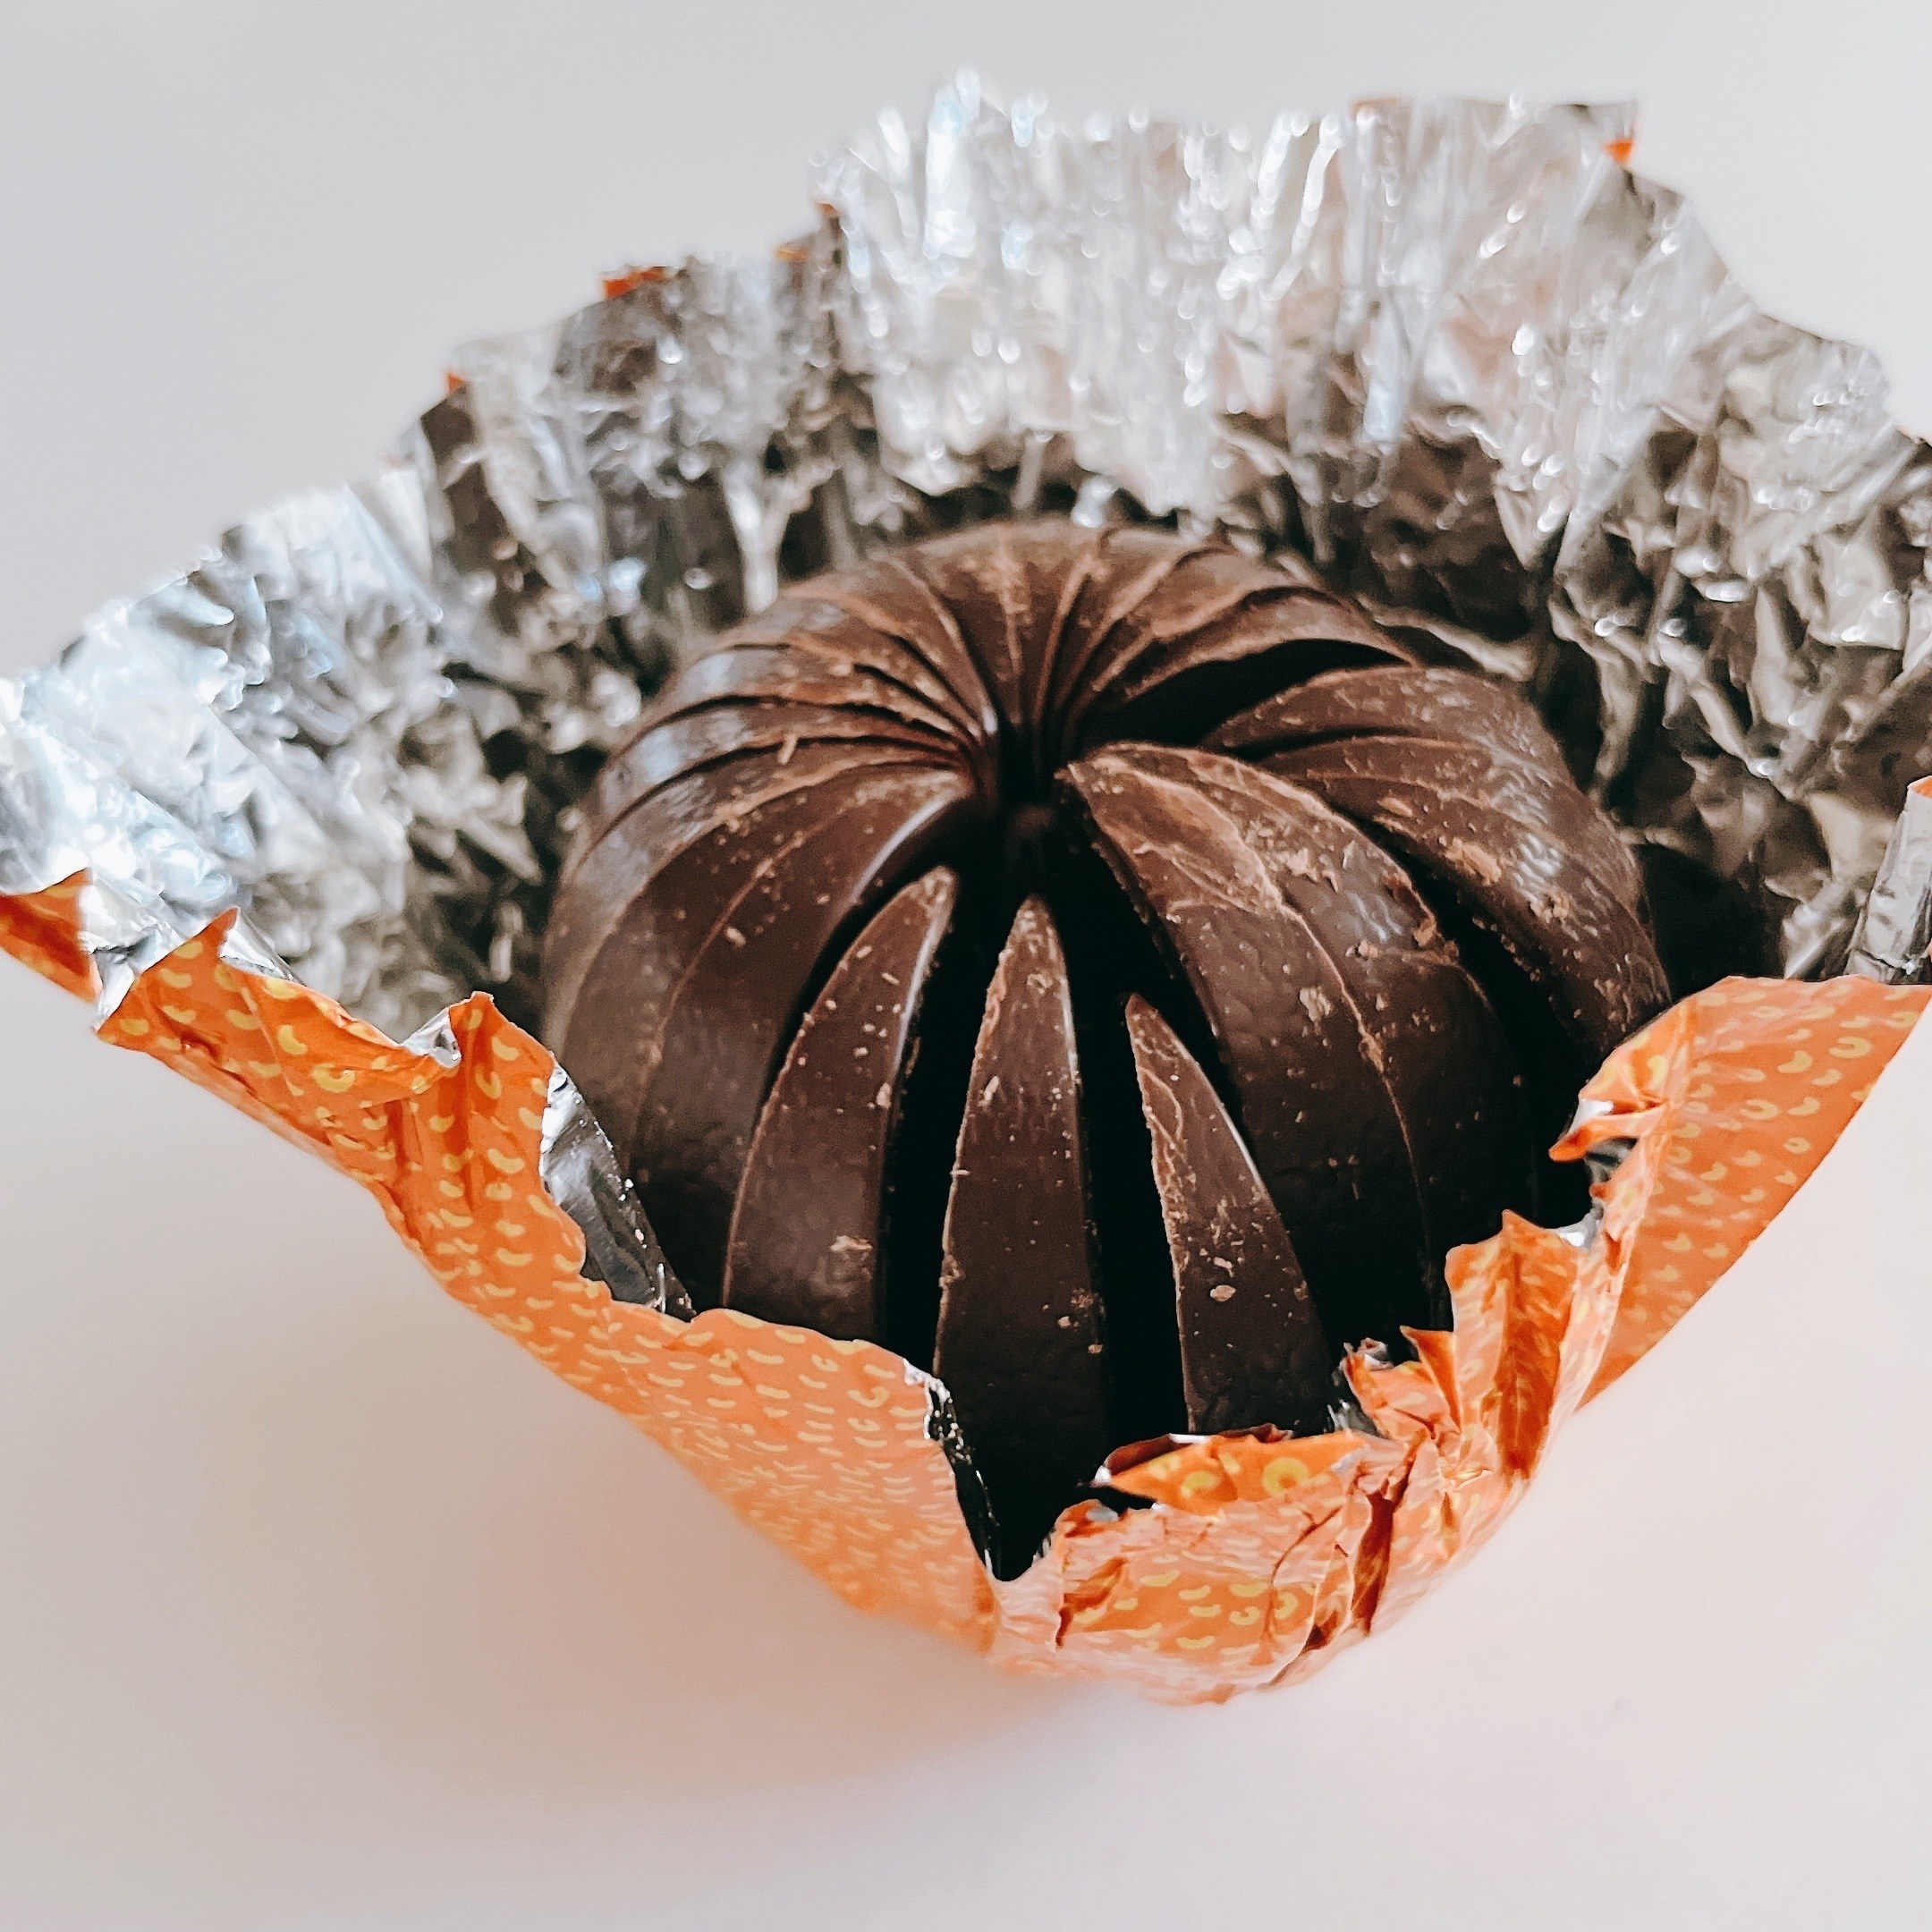 KALDI（カルディ）のおすすめチョコ「テリーズ チョコレート オレンジ ダーク」